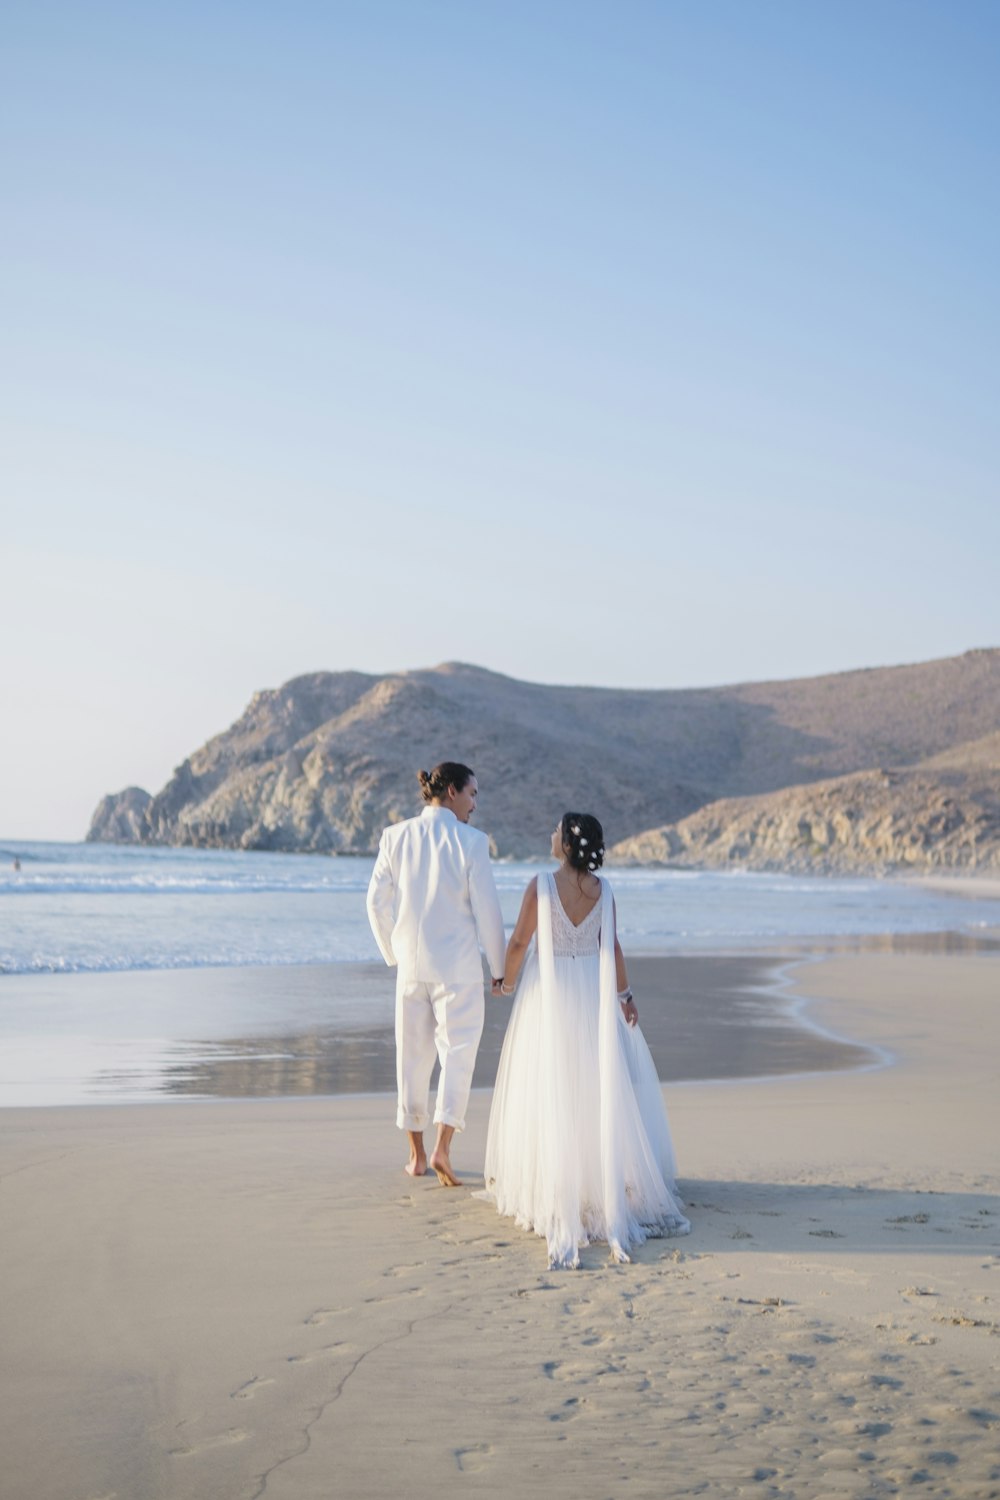 Un homme et une femme en tenue de mariage sur une plage